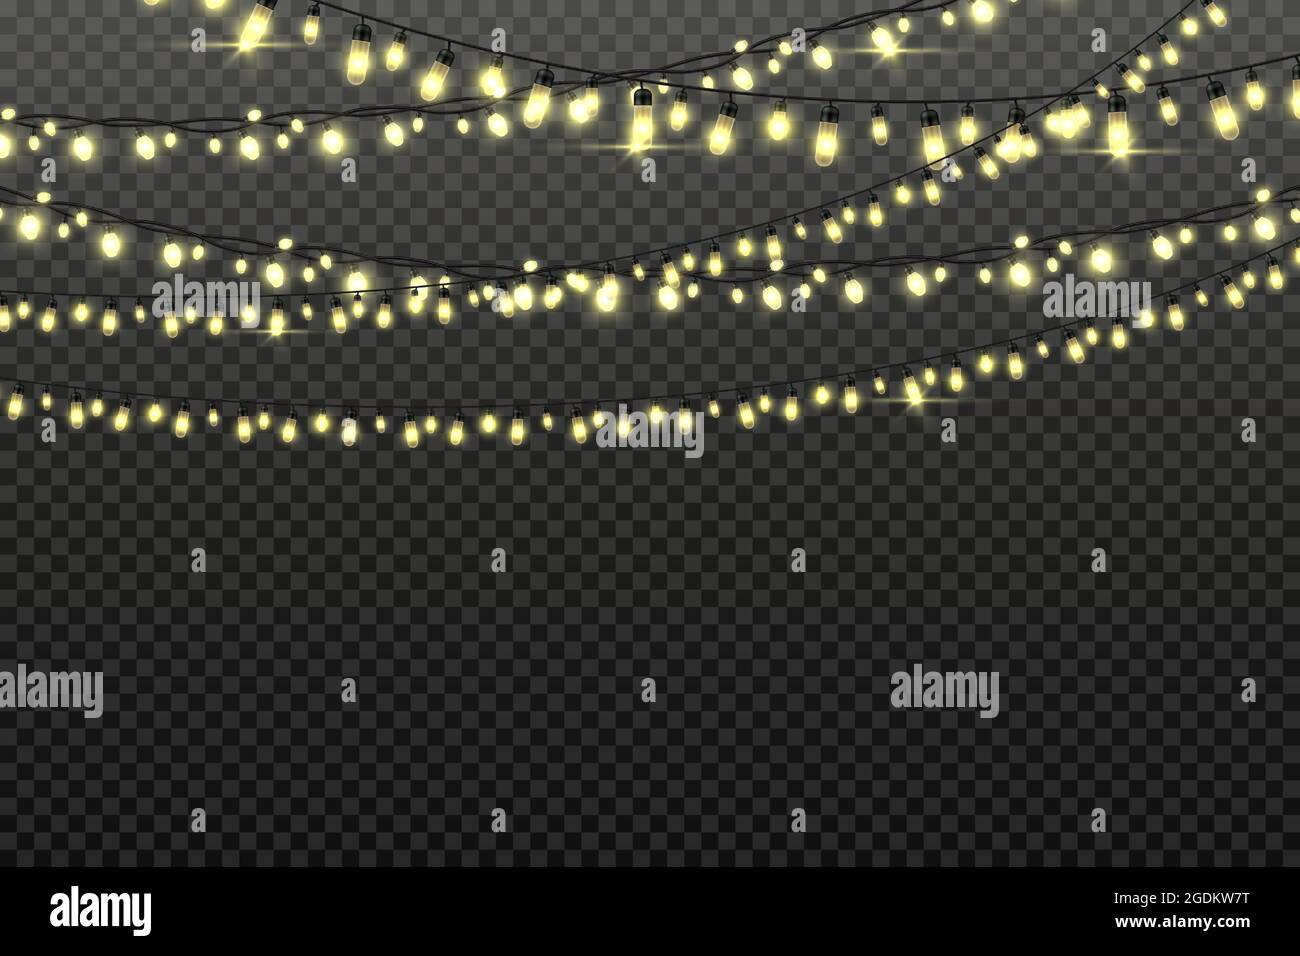 Weihnachtliche Girlanden mit Glühbirnen am String für Party-Hintergrund. Weihnachtsdekoration, leuchtende, glänzende Lichterketten. Vektor festliche Girlande Stock Vektor